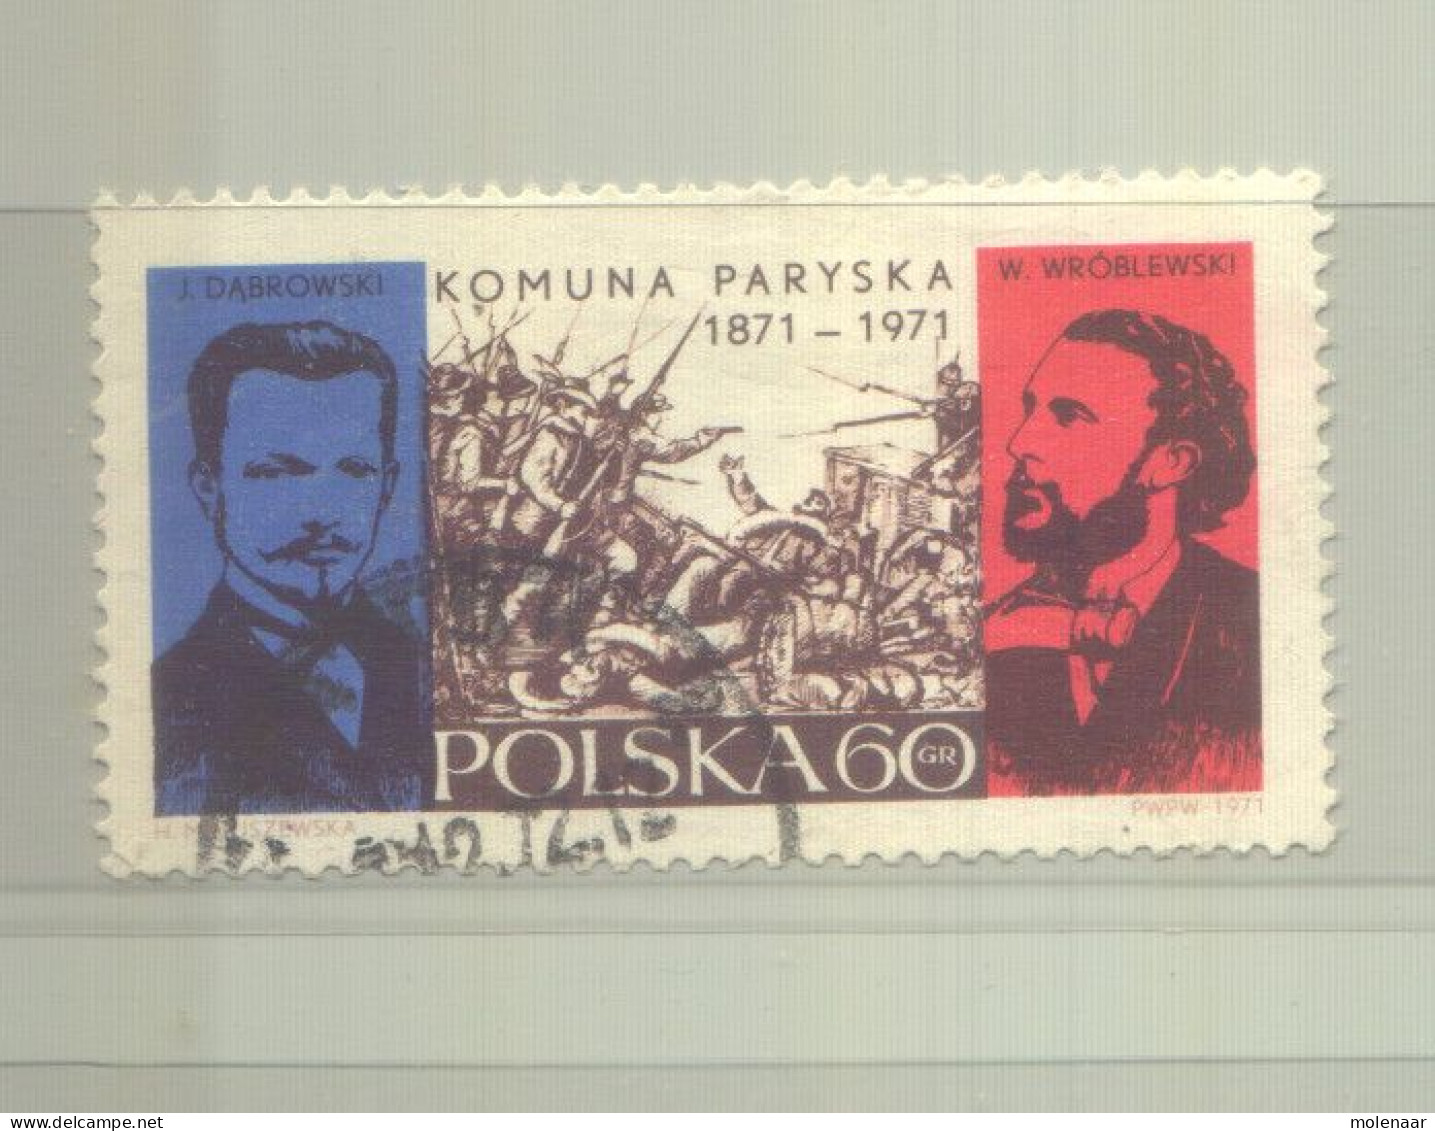 Postzegels > Europa > Polen > 1944-.... Republiek > 1981-90 > Gebruikt 2055 (12191) - Usati